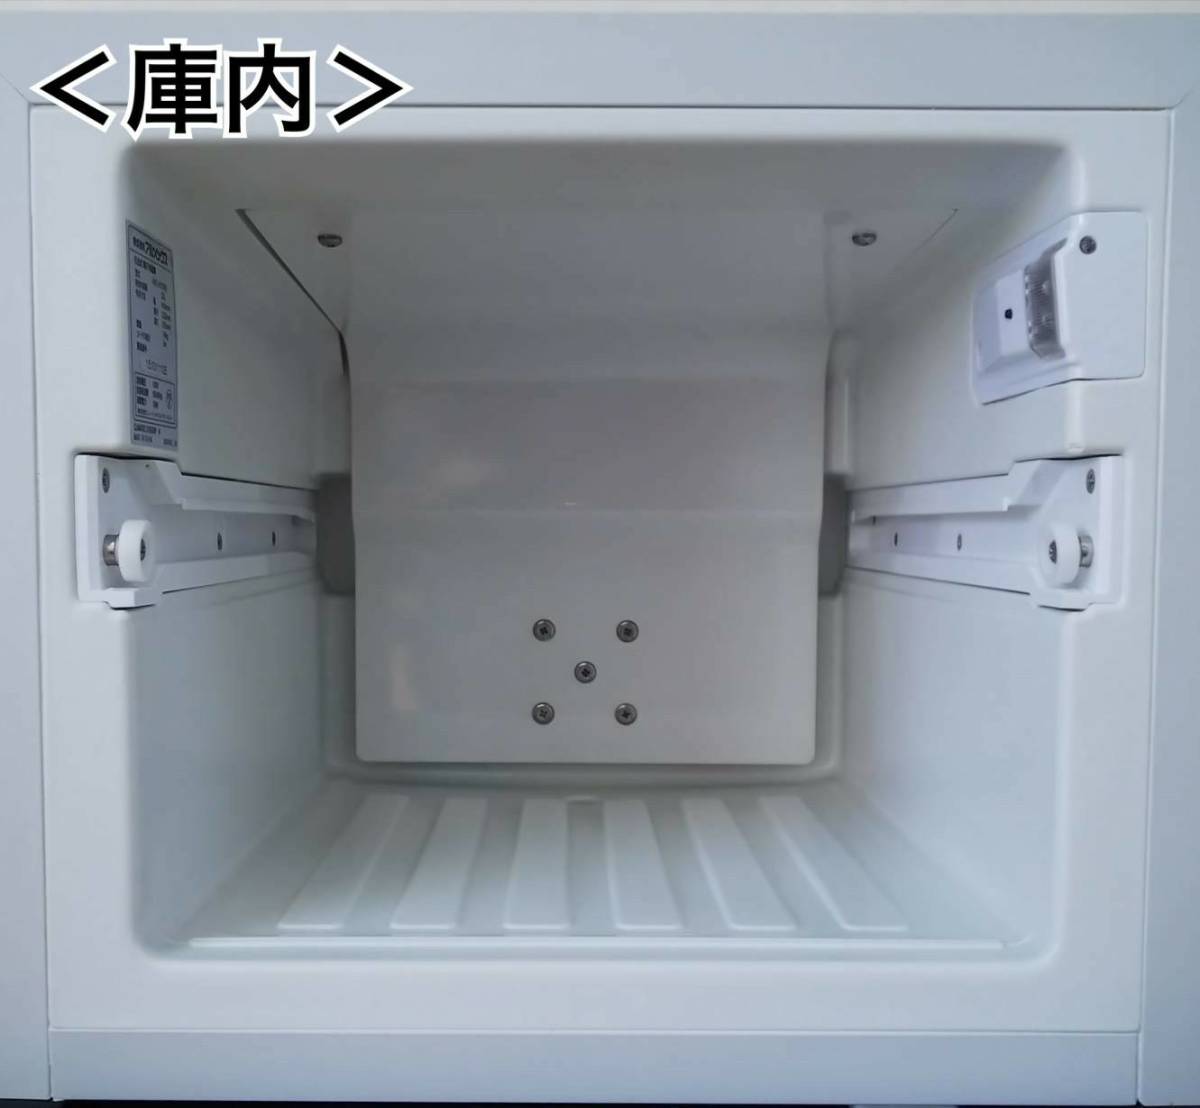 アルメックス ペルチェ式 電子冷蔵庫(引出式) NEO-CUBEⅡ ADC-H21(W) 中古動作品 6台有_画像8